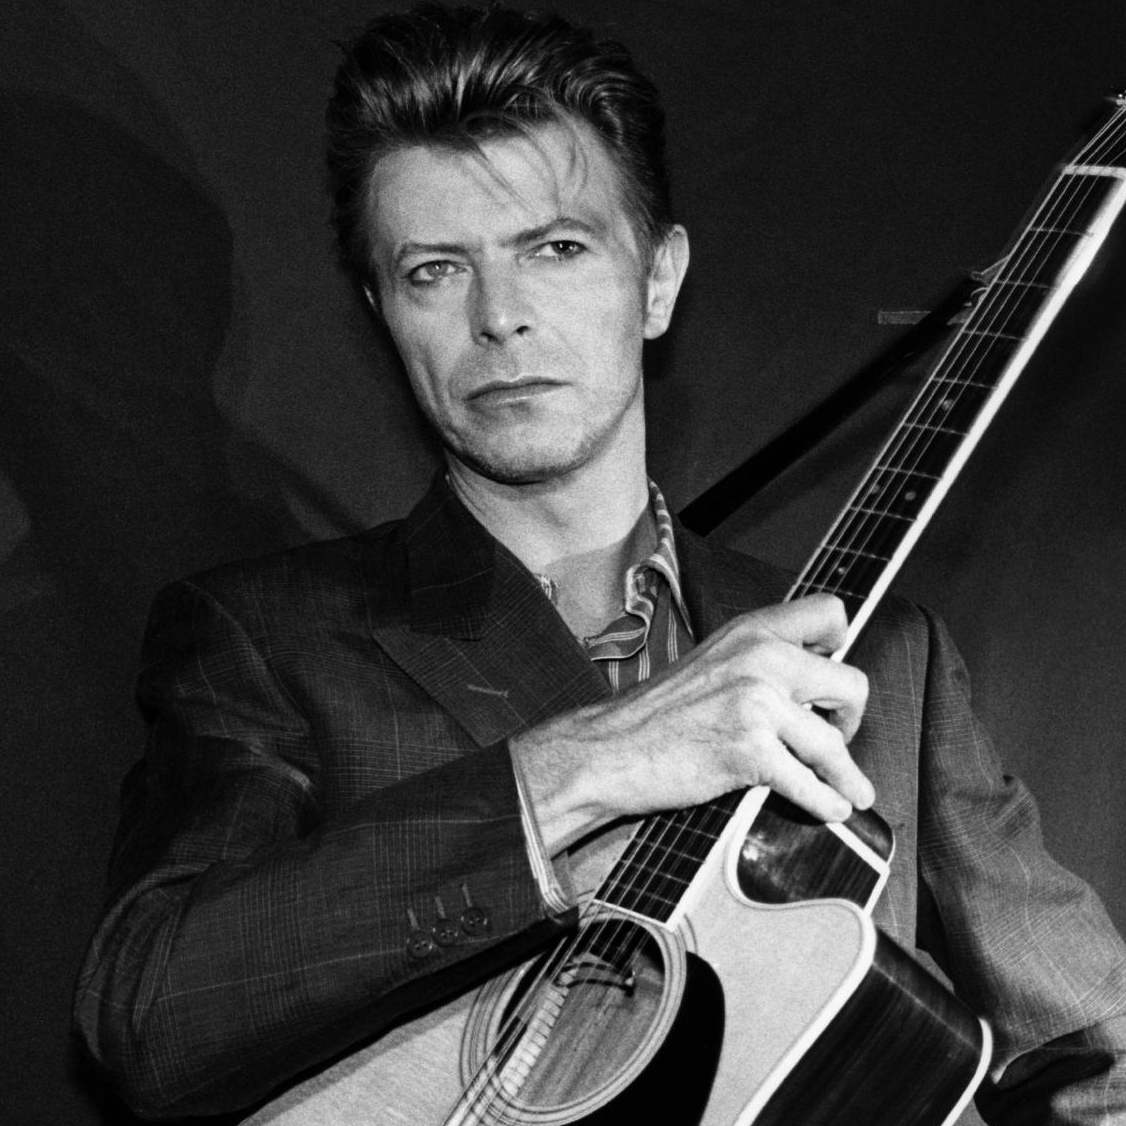 Ouça ‘To Be Love’, música de David Bowie gravada nos anos 70